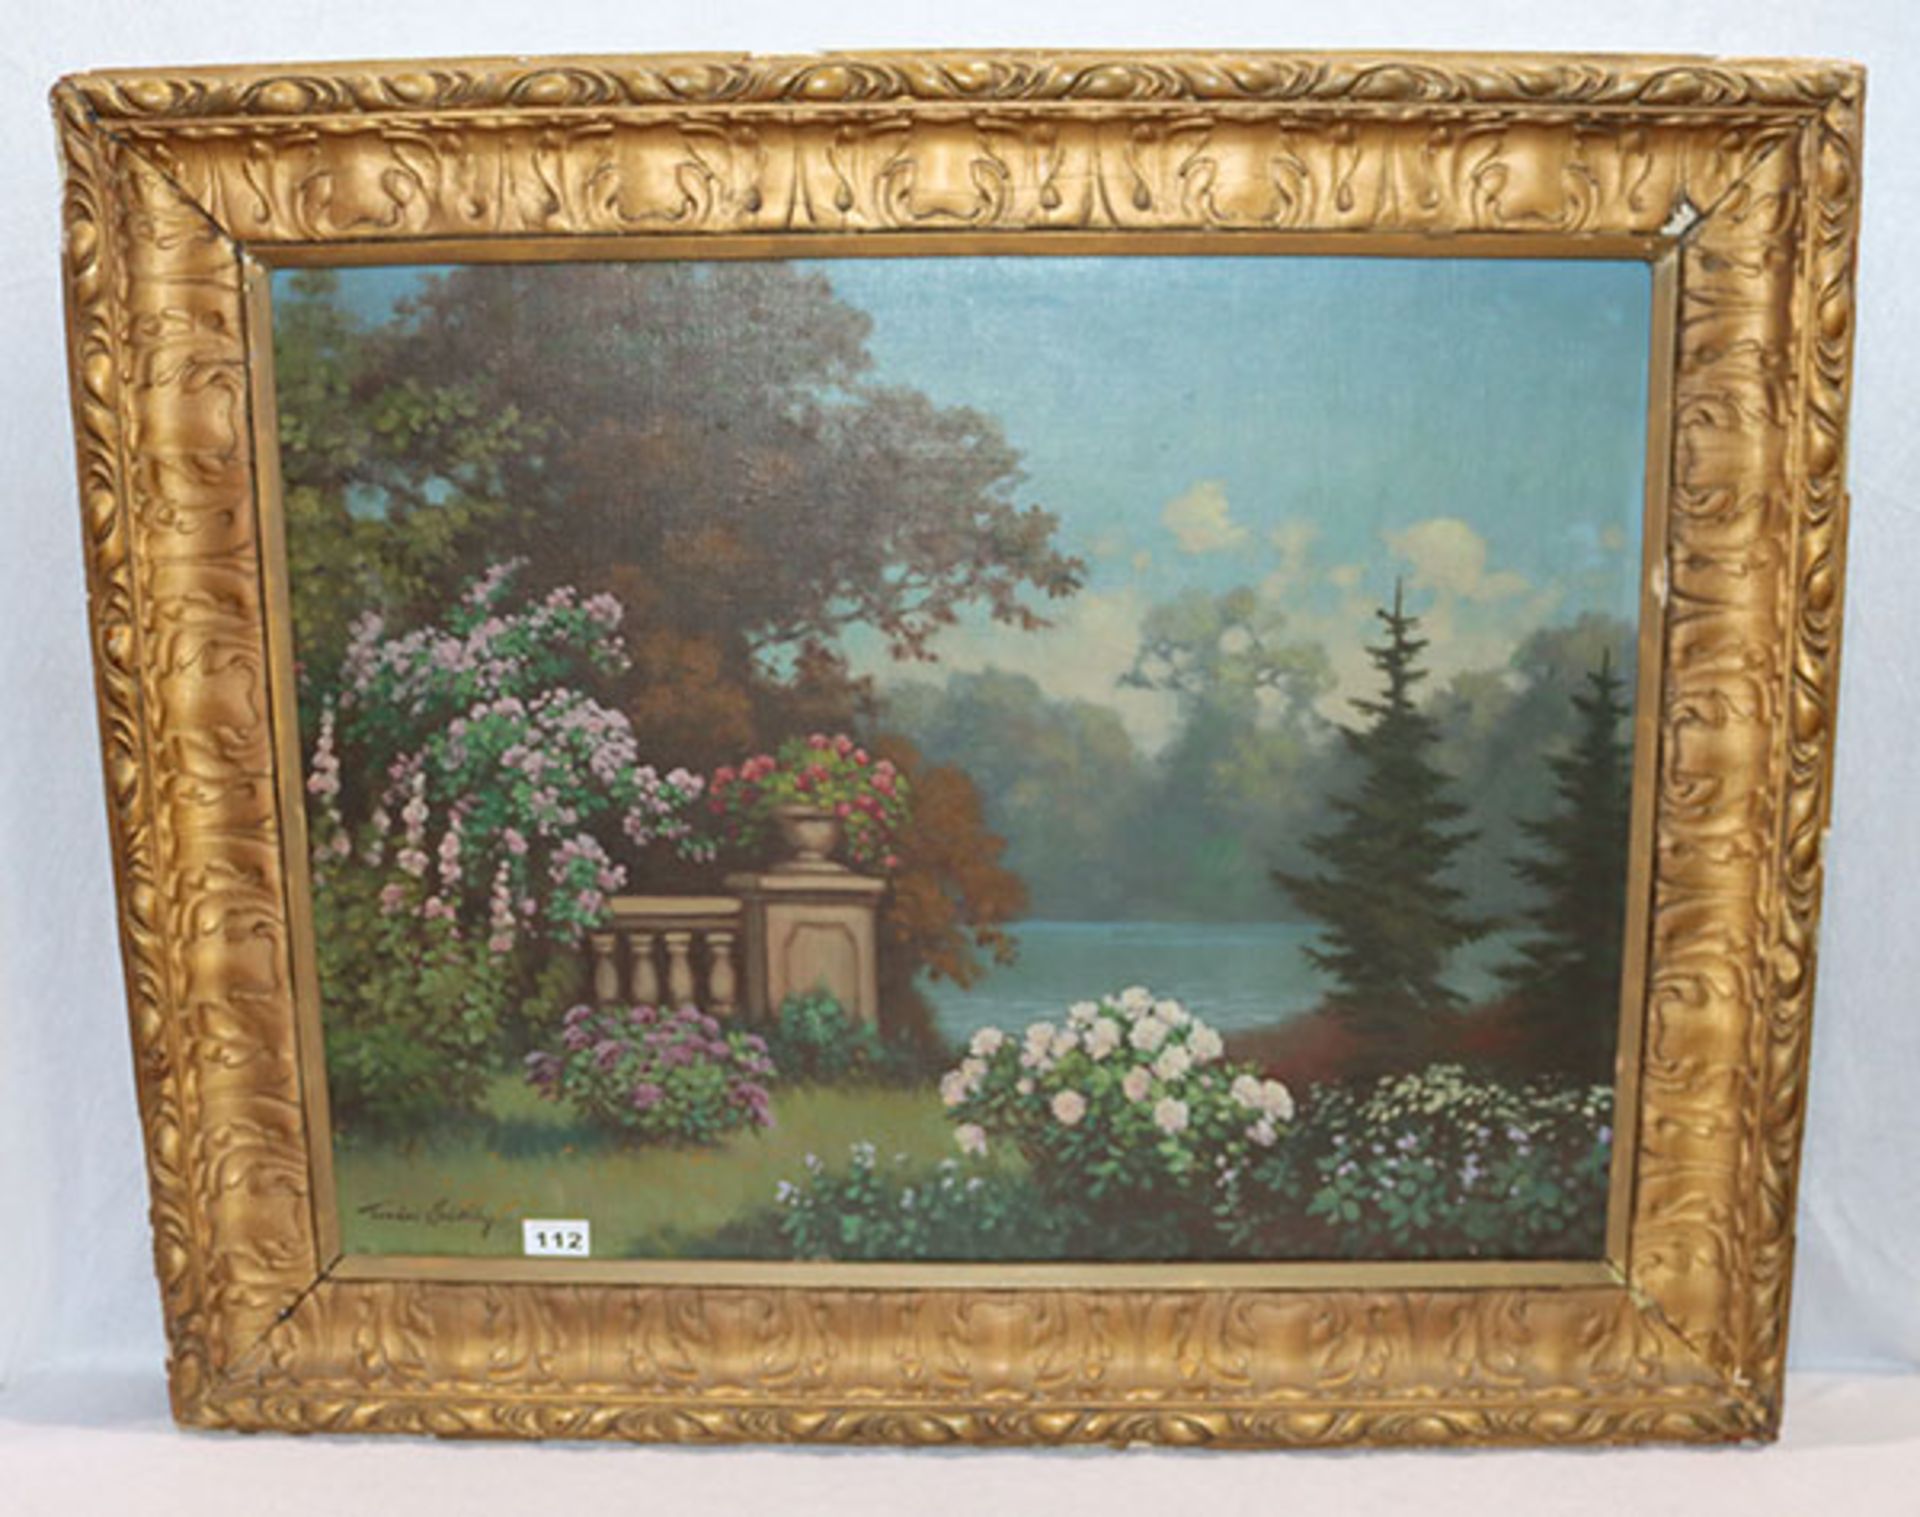 Gemälde ÖL/LW 'Park-Szenerie am See', signiert Tordao, Székely Mihály, * 1890 + 1940, gerahmt,